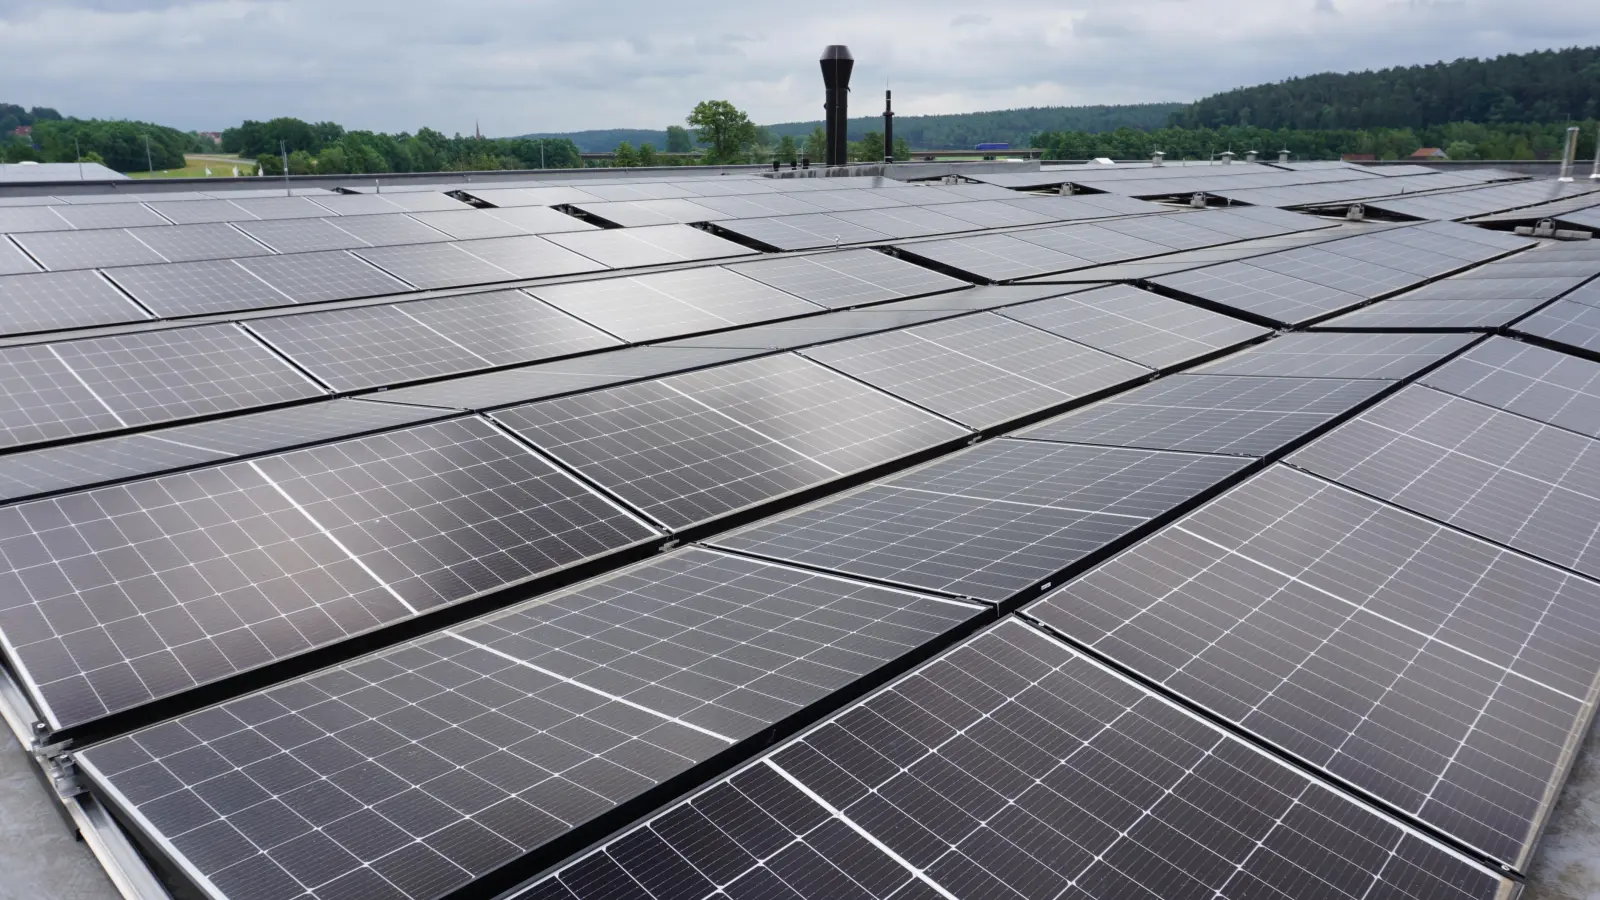 Seit über einem halben Jahr ist die Photovoltaik-Anlage auf dem Dach der Eberhardt GmbH fertig. Doch erst seit Kurzem produziert sie Strom. (Foto: Andrea Walke)